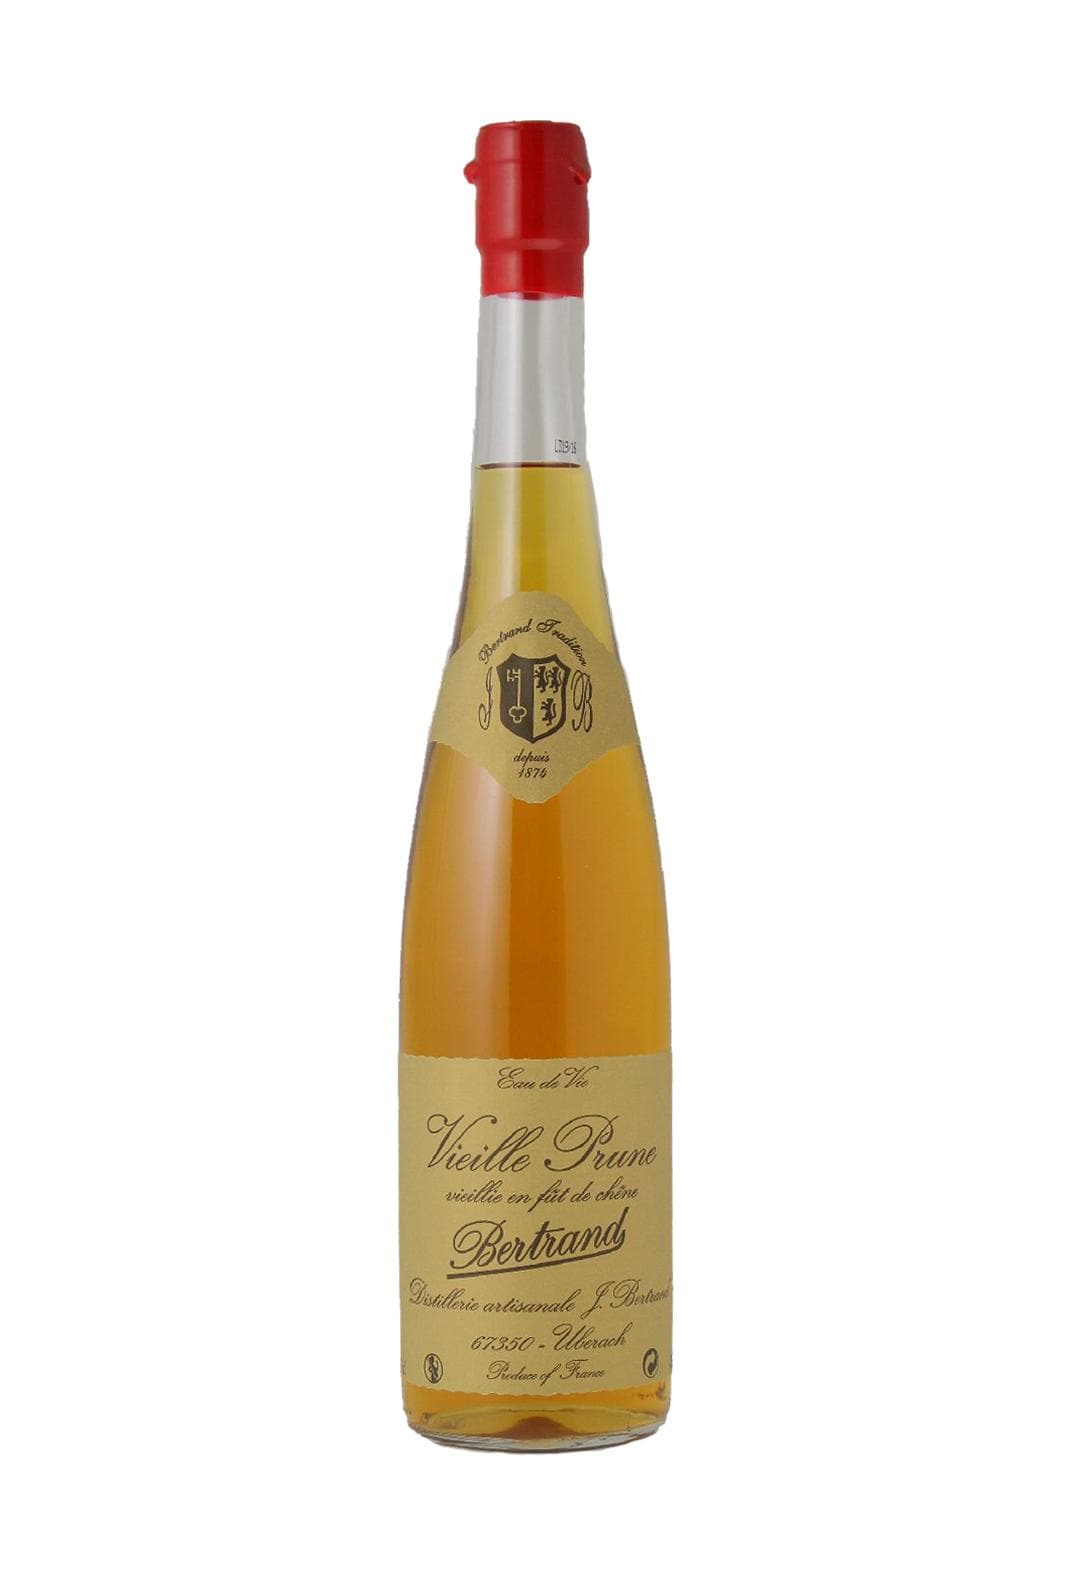 Bertrand Eau de Vie de Prune Vieille (Plum aged in oak) 42% 700ml | Liqueurs | Shop online at Spirits of France